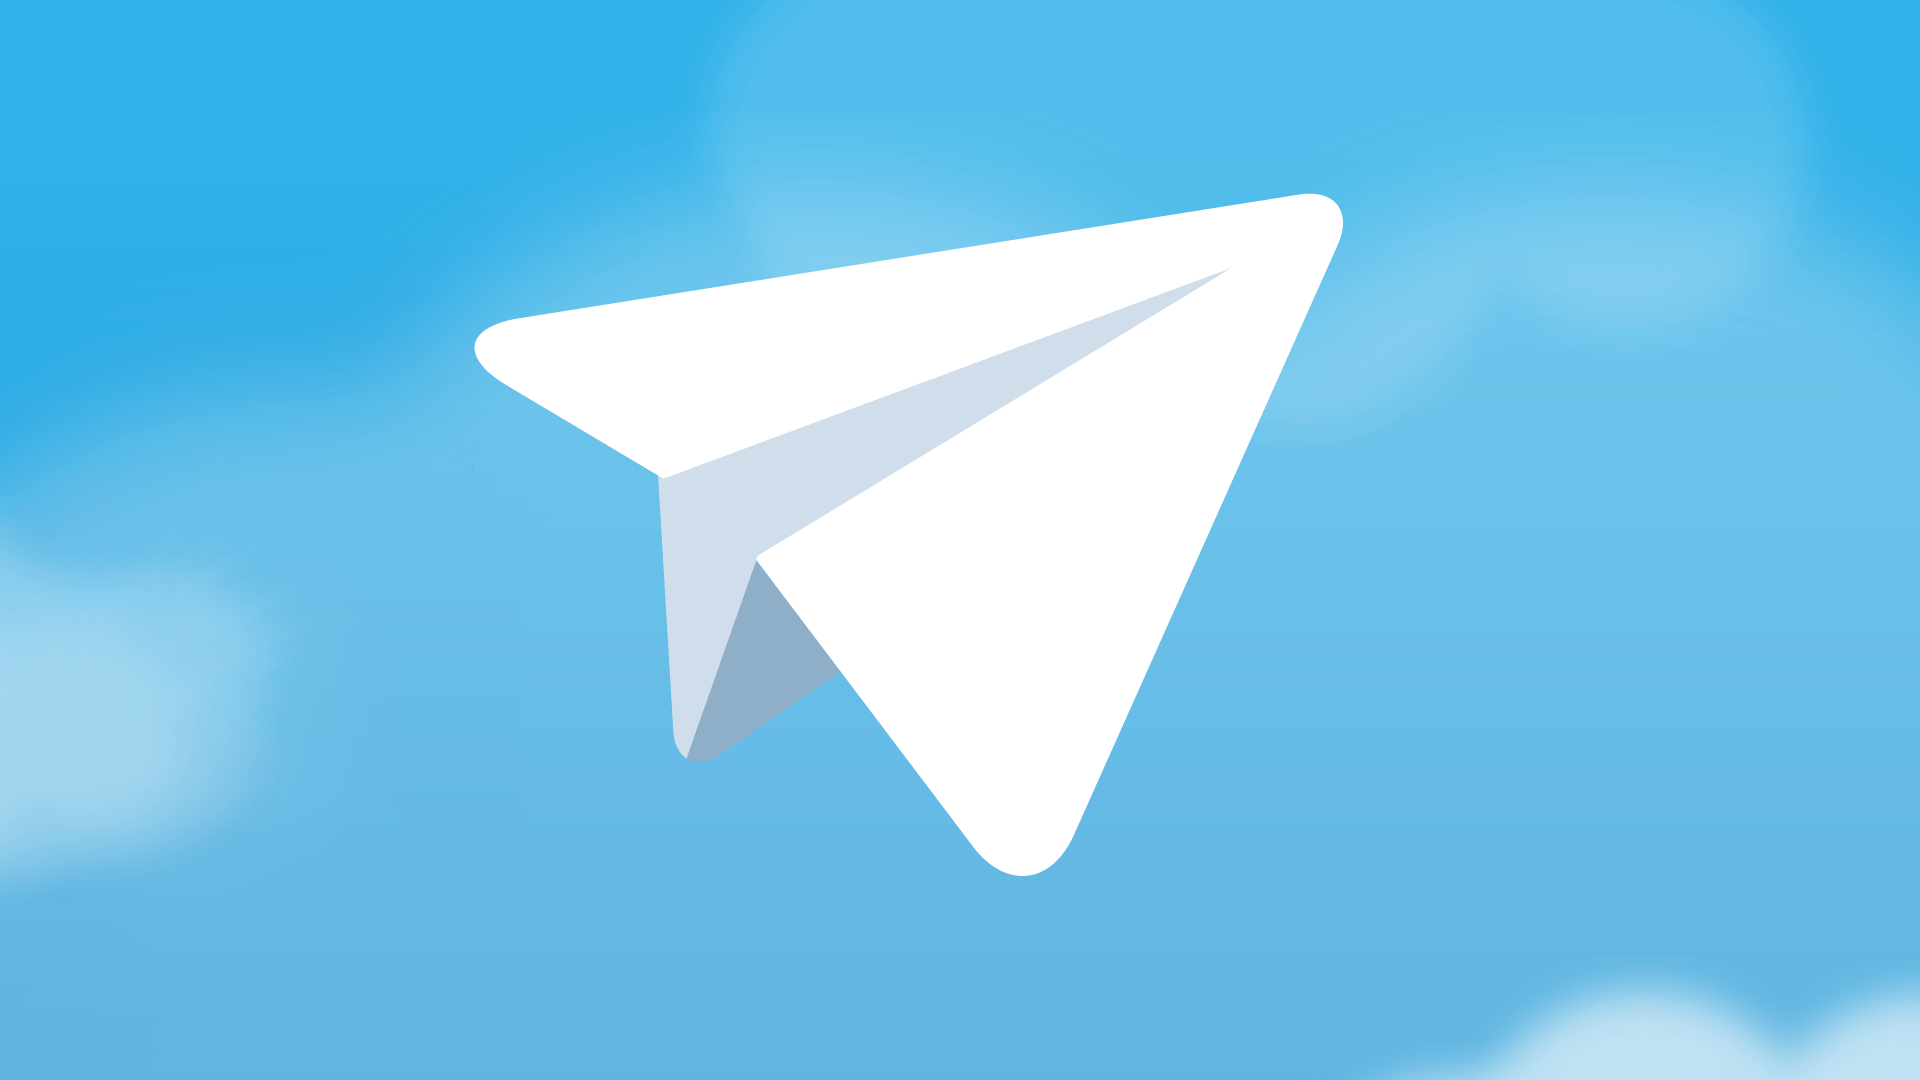 纸飞机app英文名字-纸飞机软件英文名叫什么